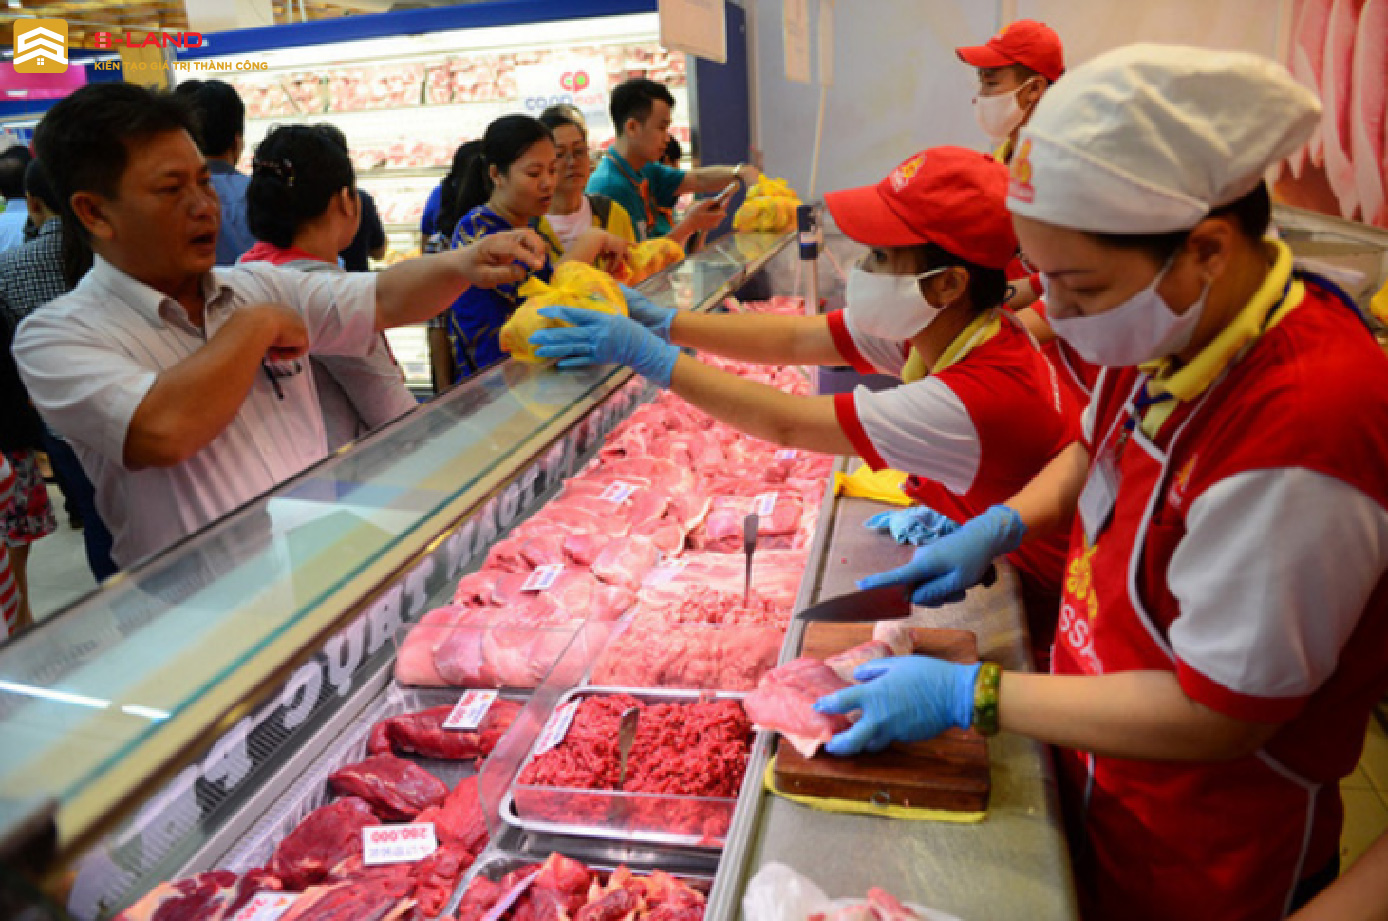 Năm 2020, lượng tiêu thụ thịt của người dân khoảng 2,3kg/người/tháng